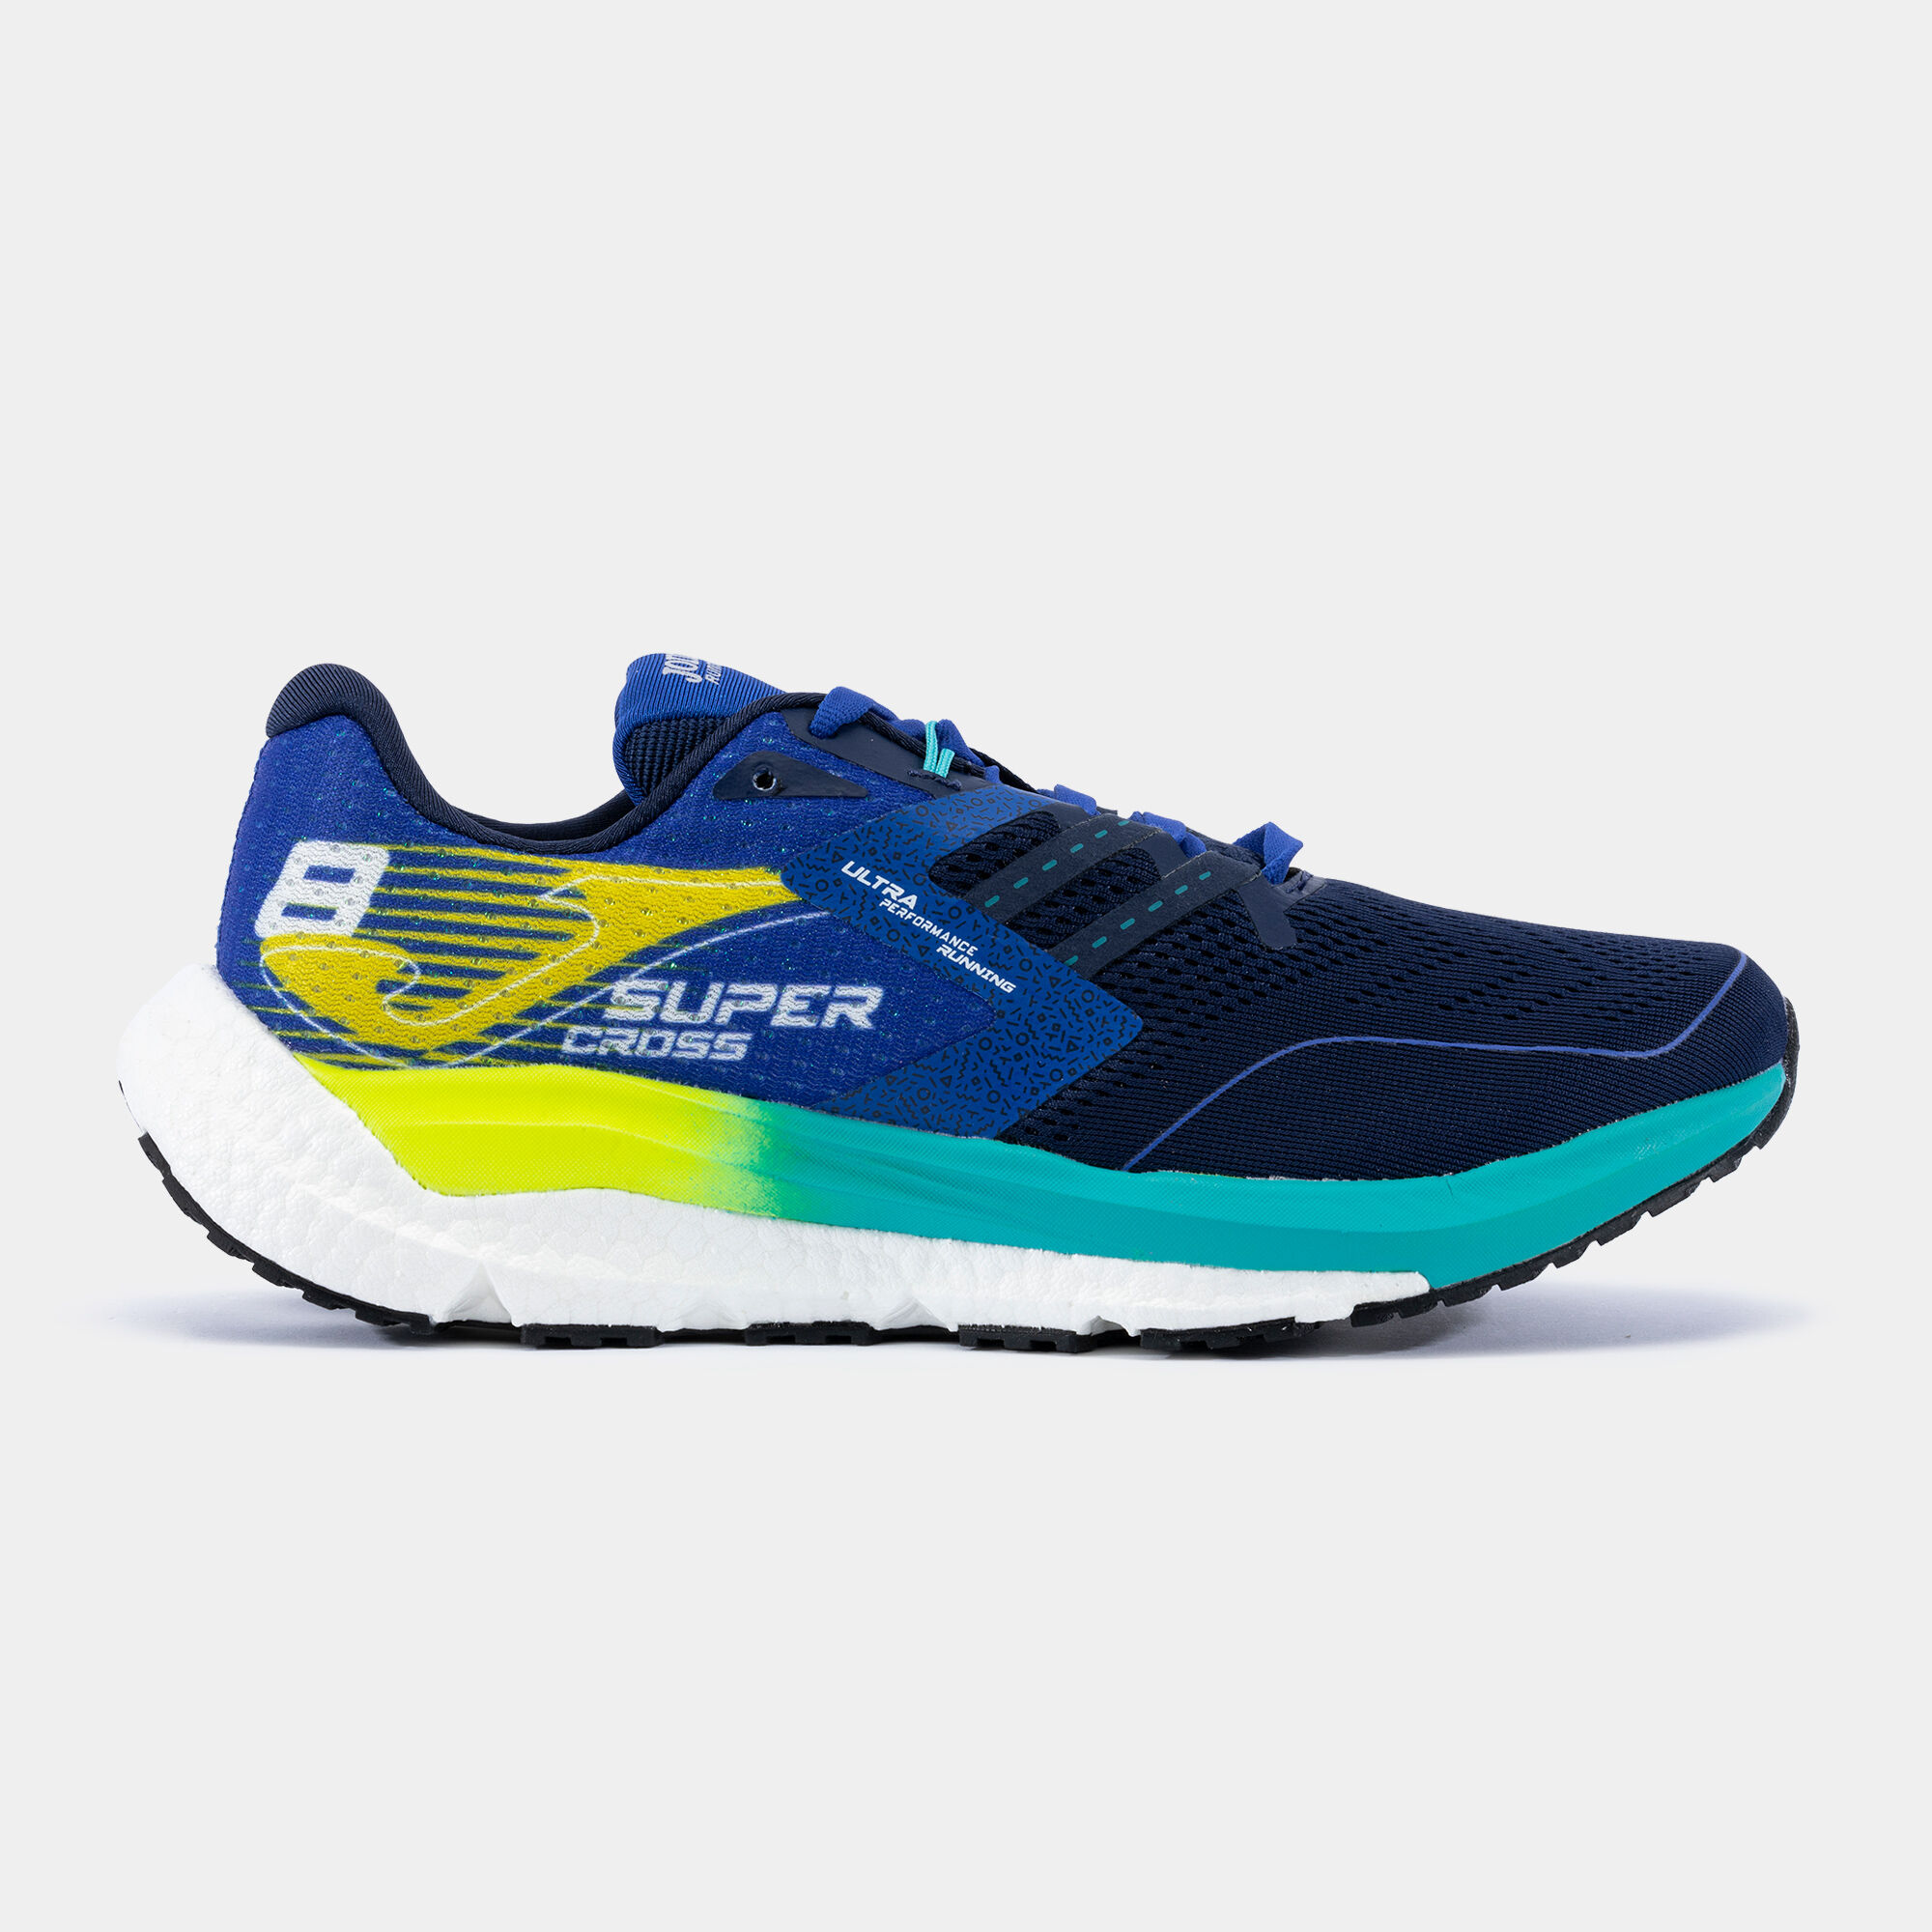 Chaussures running R.Supercross 23 homme bleu marine bleu électrique